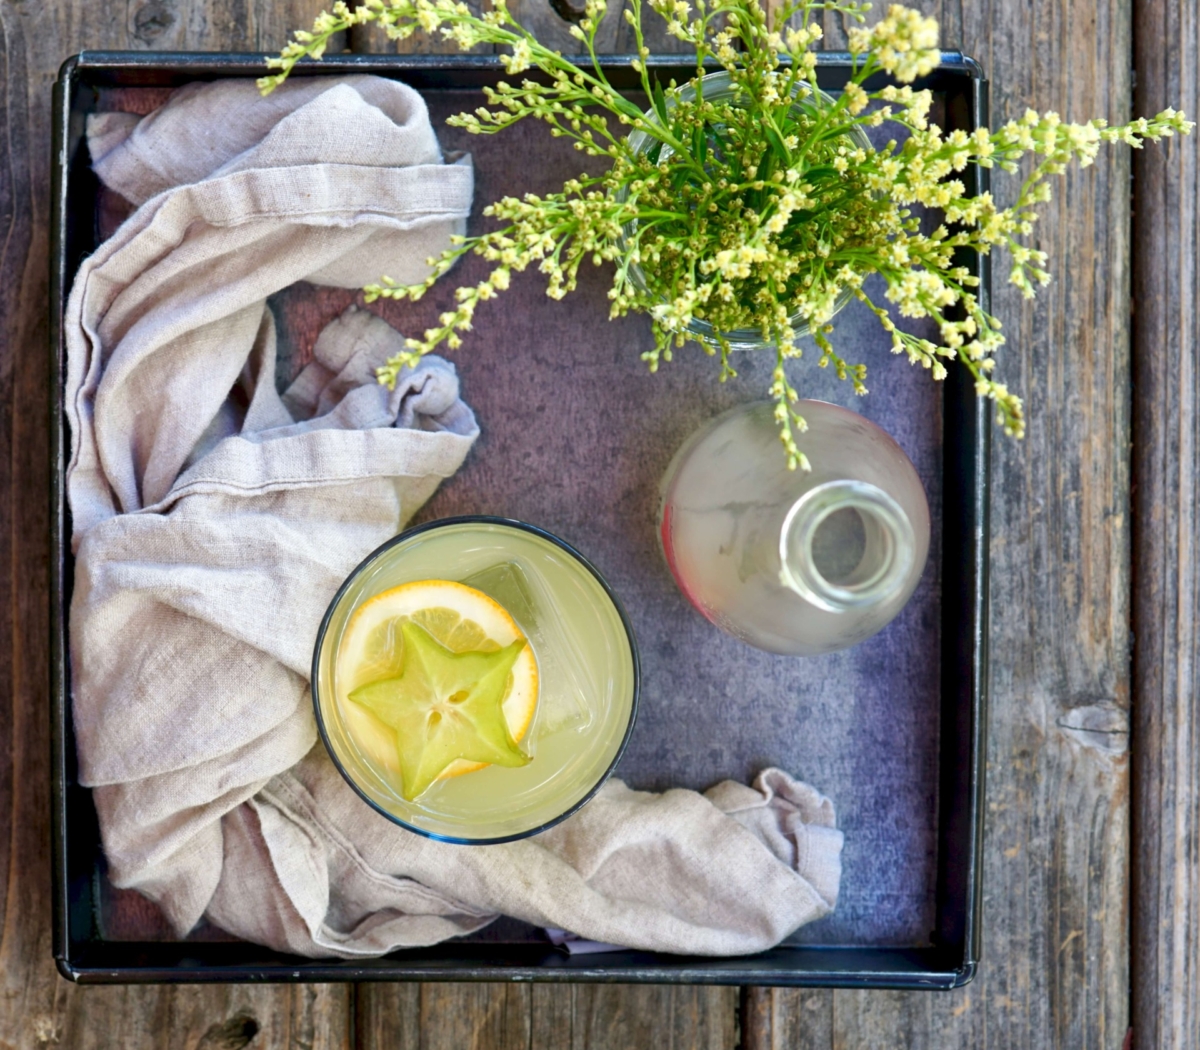 sake + starfruit cocktail